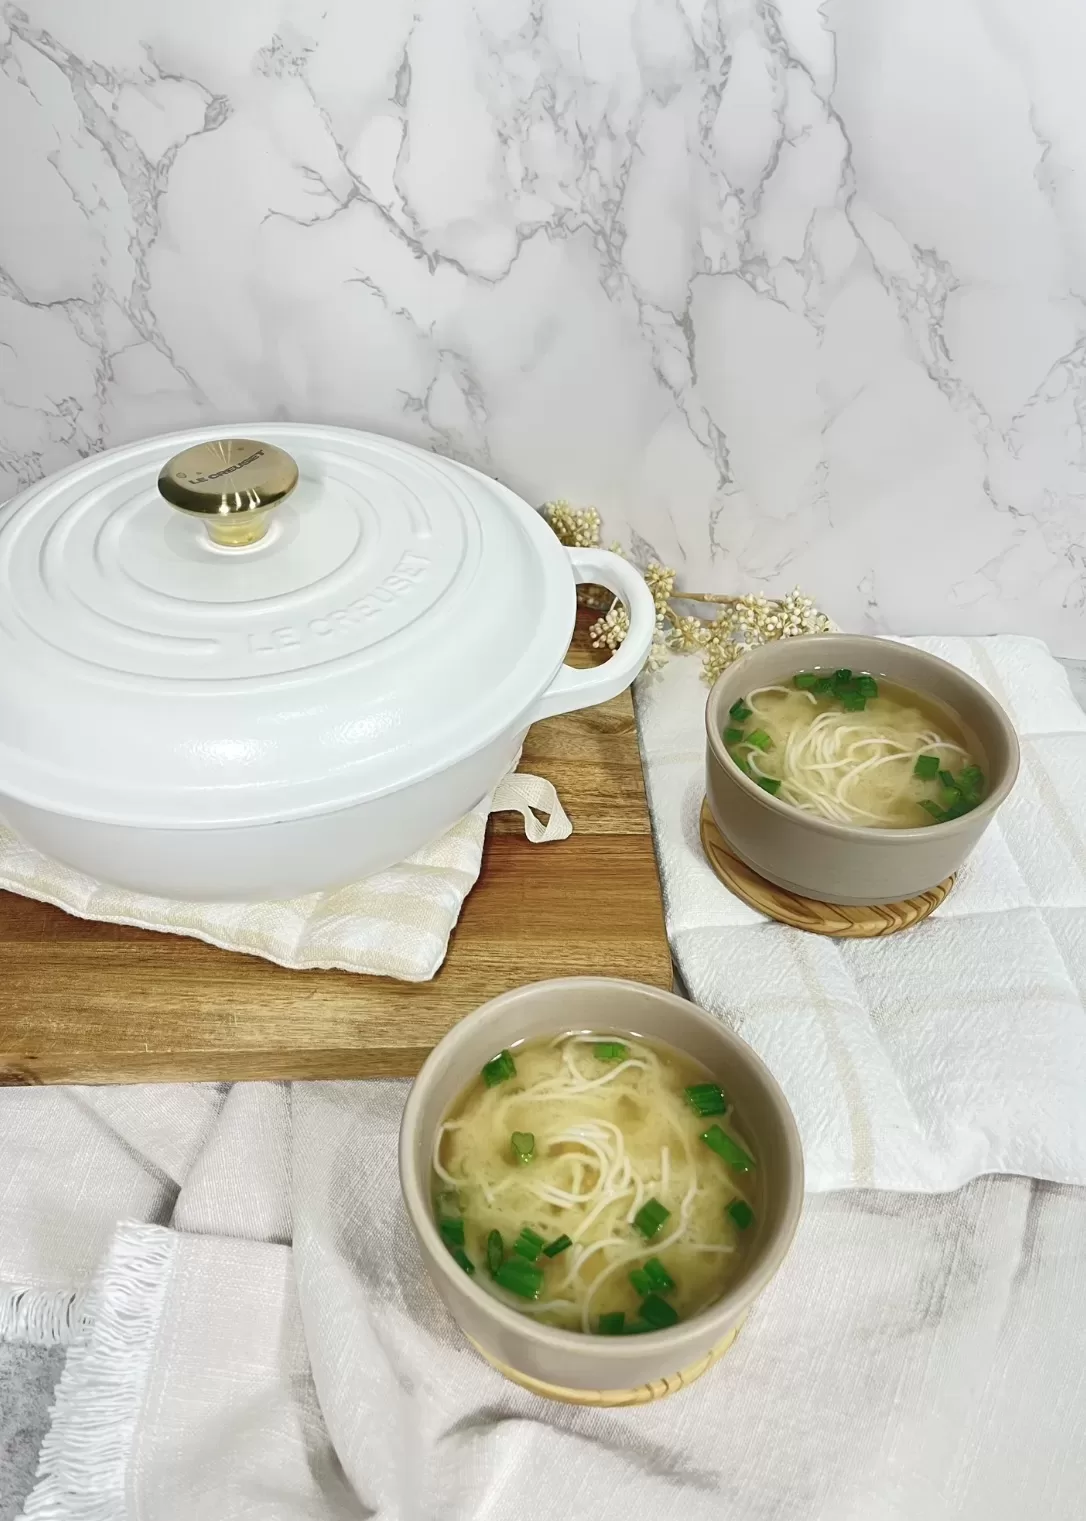 le creuset saucepan next to bowls of miso soup